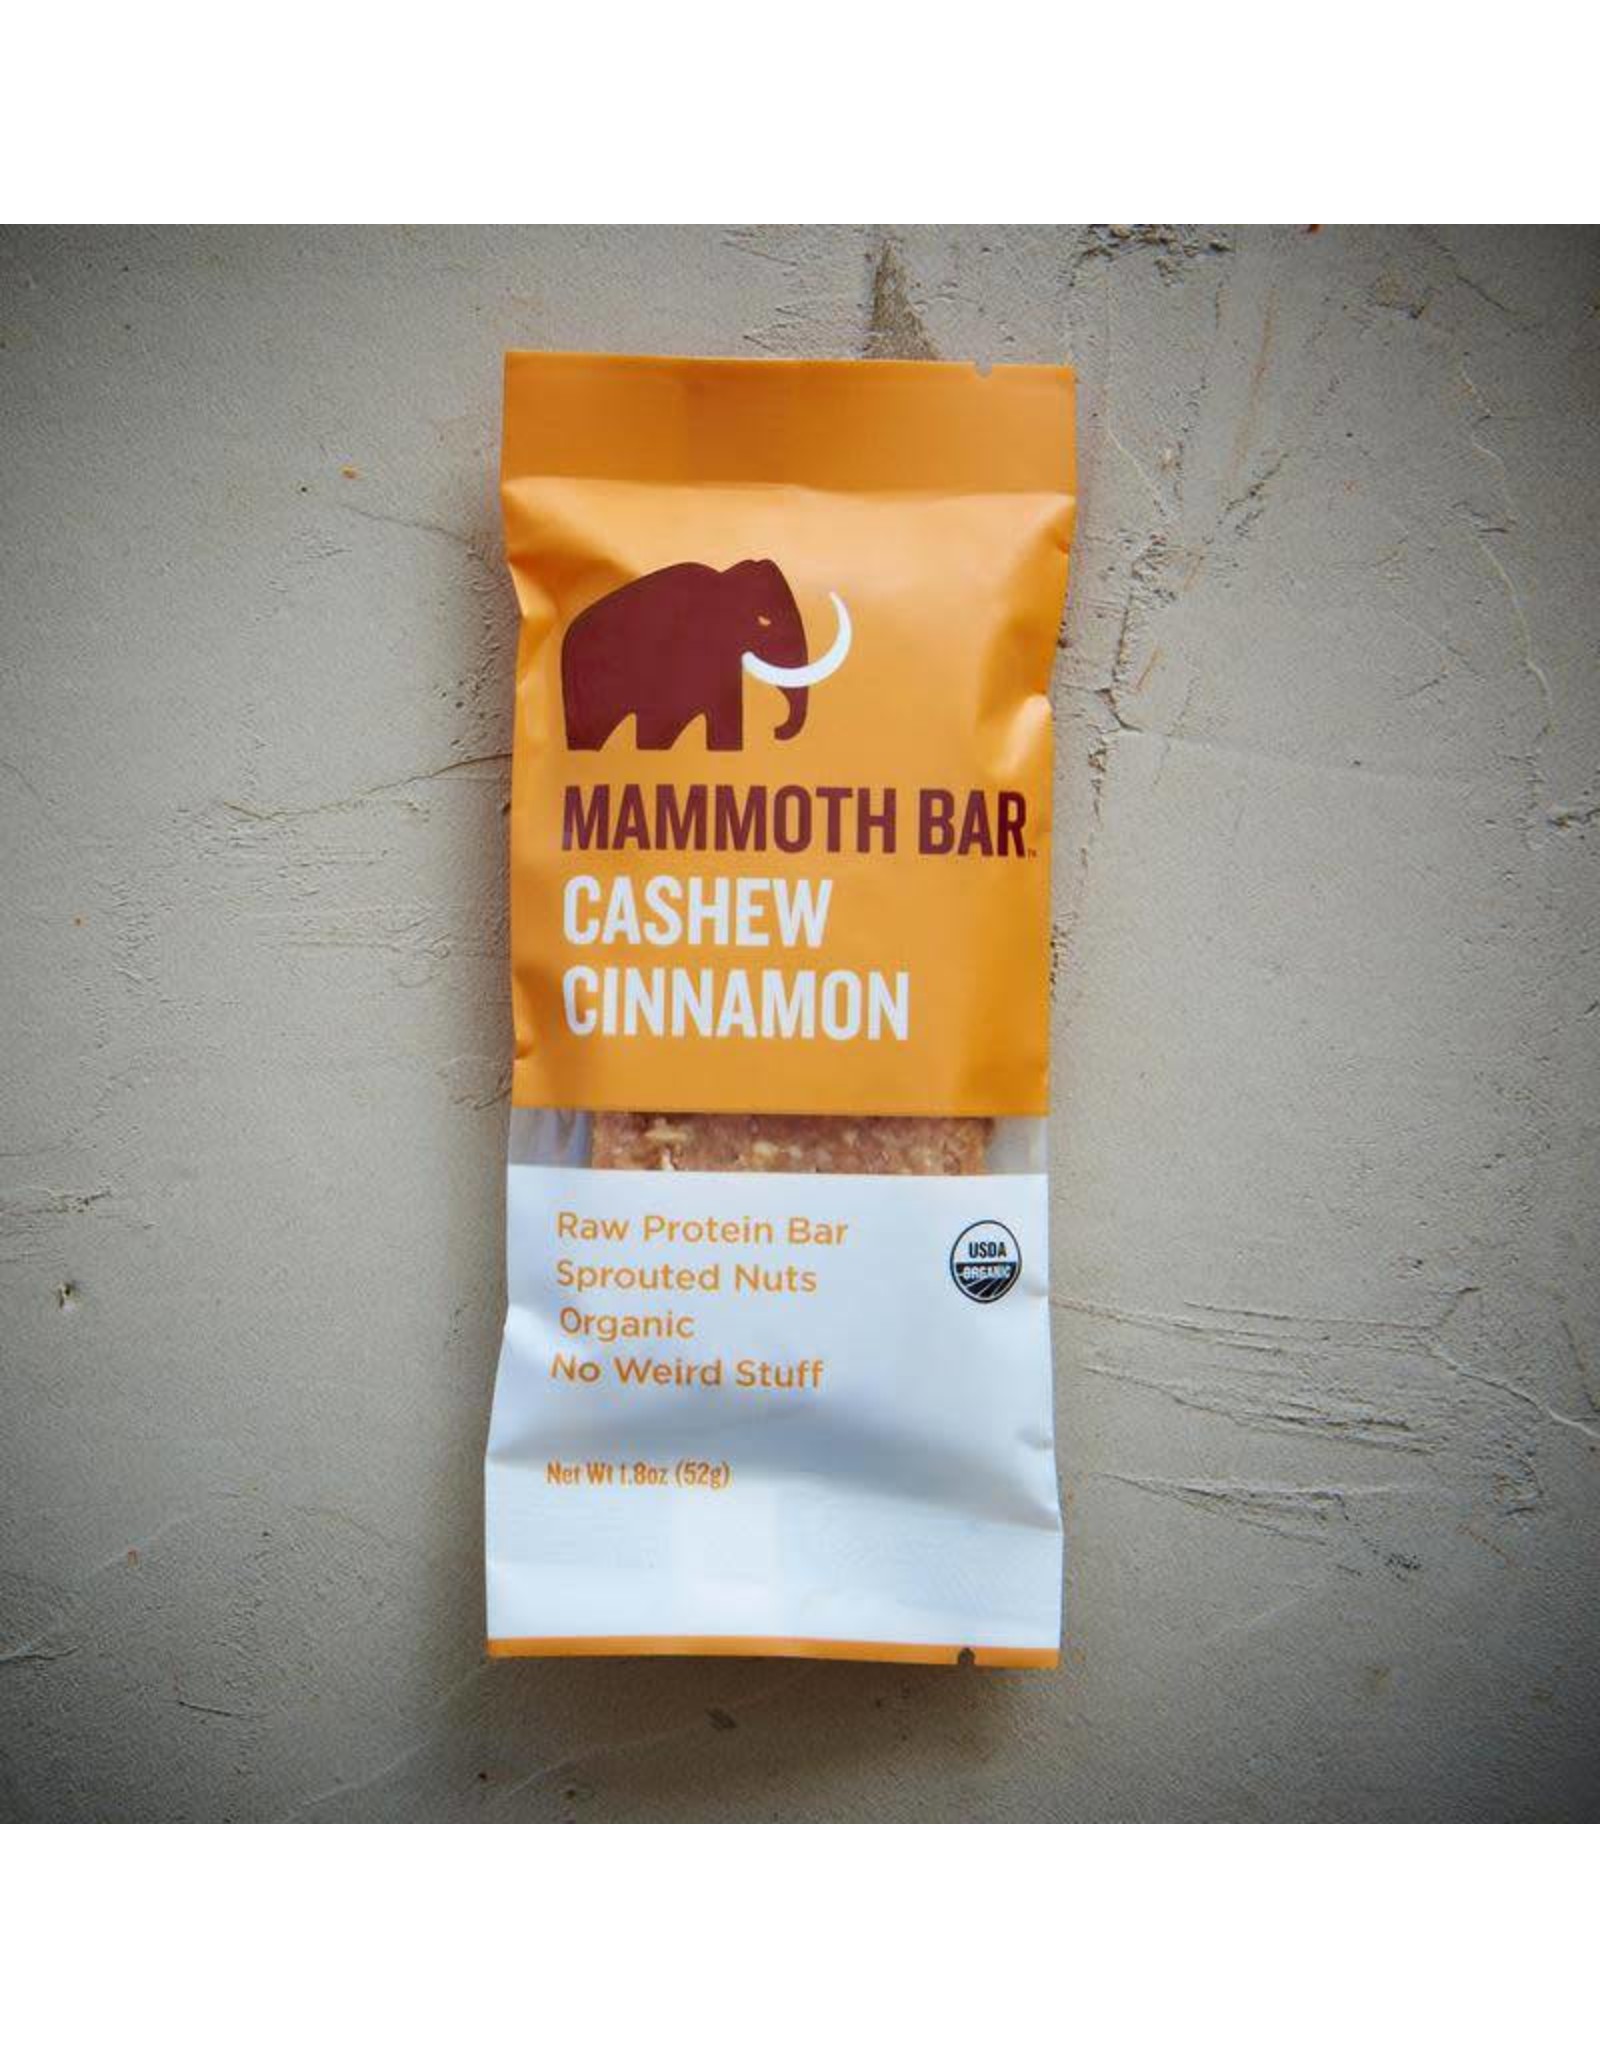 Mammoth Bar